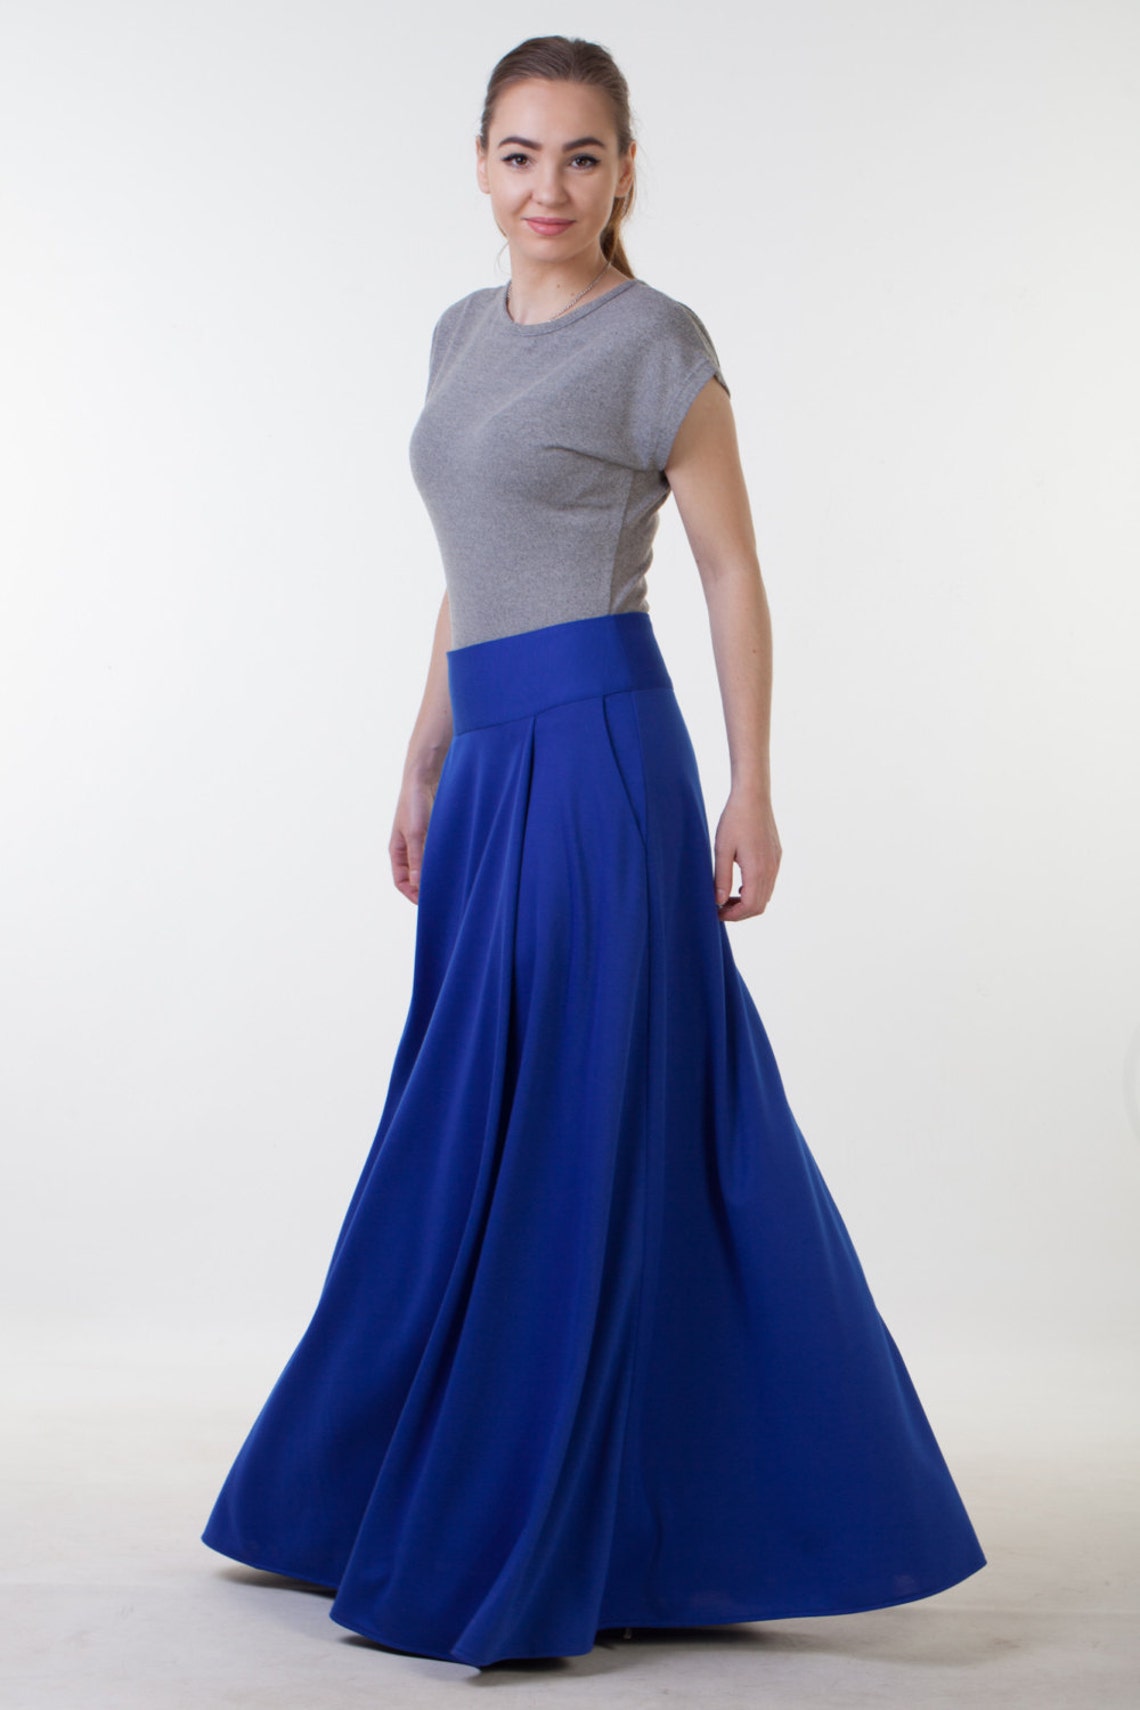 Long Blue Skirt With Pockets Office Skirt Long Autumn Skirt - Etsy